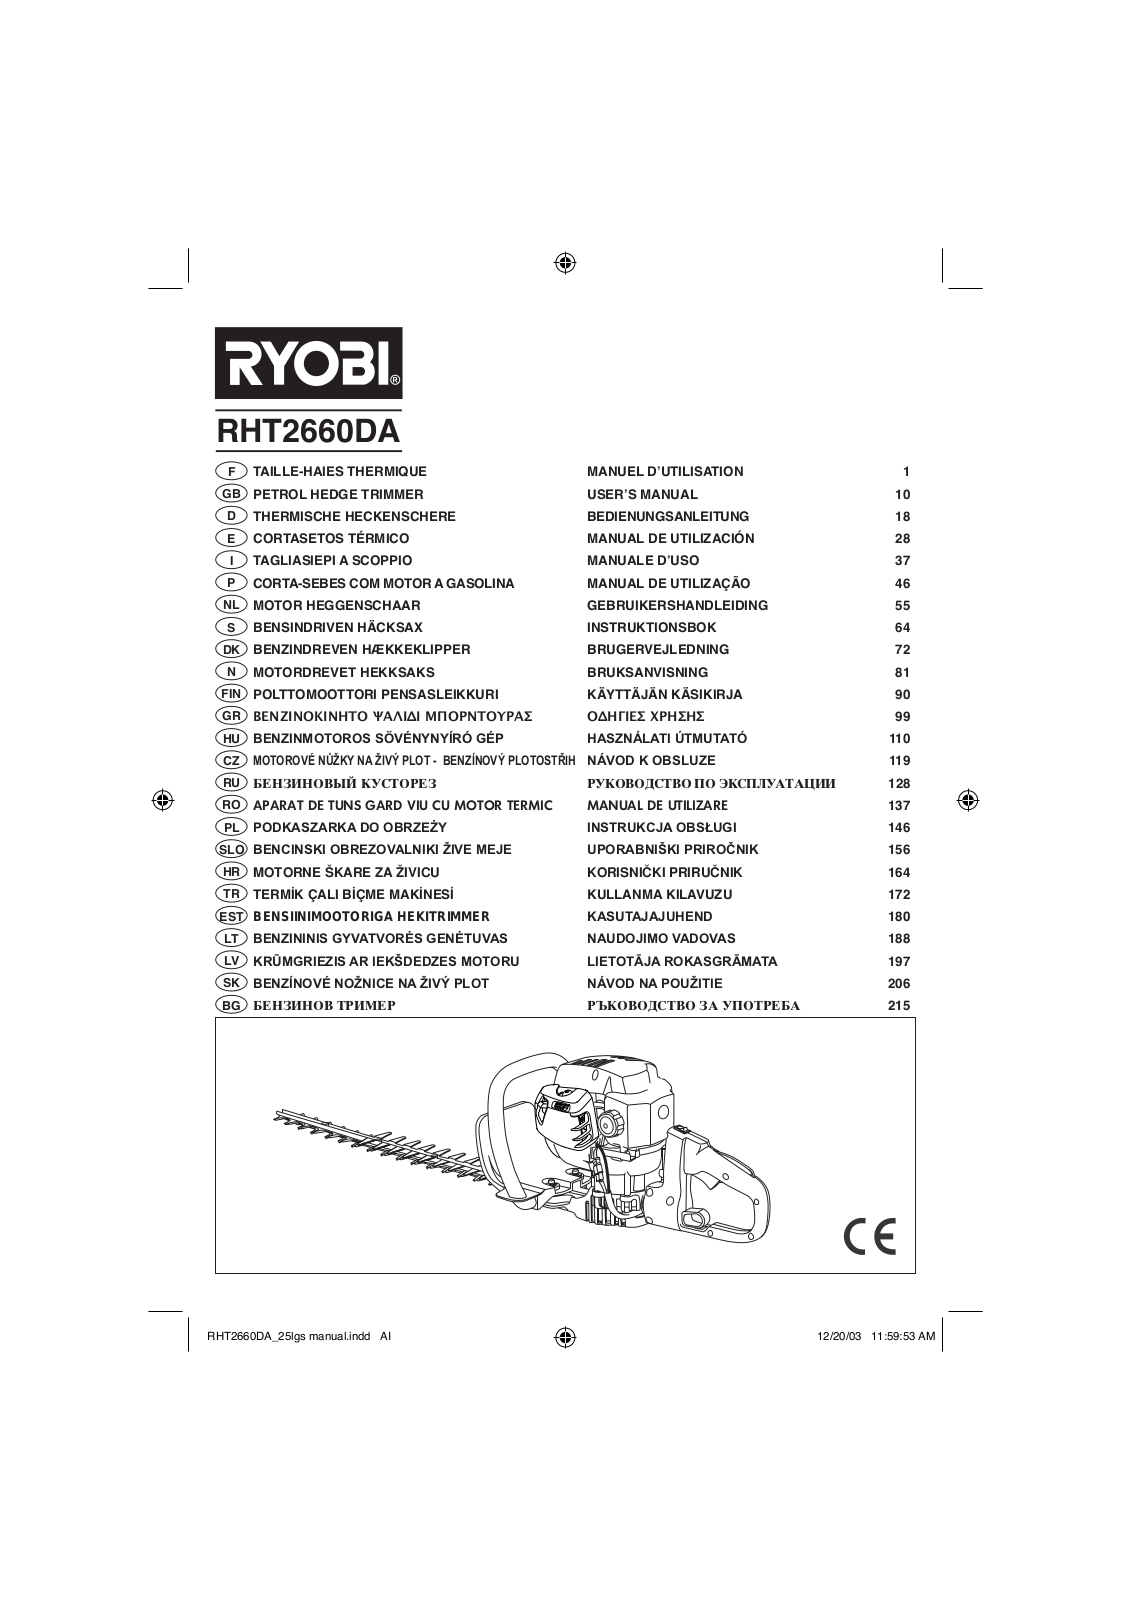 RYOBI RHT2660DA User Manual